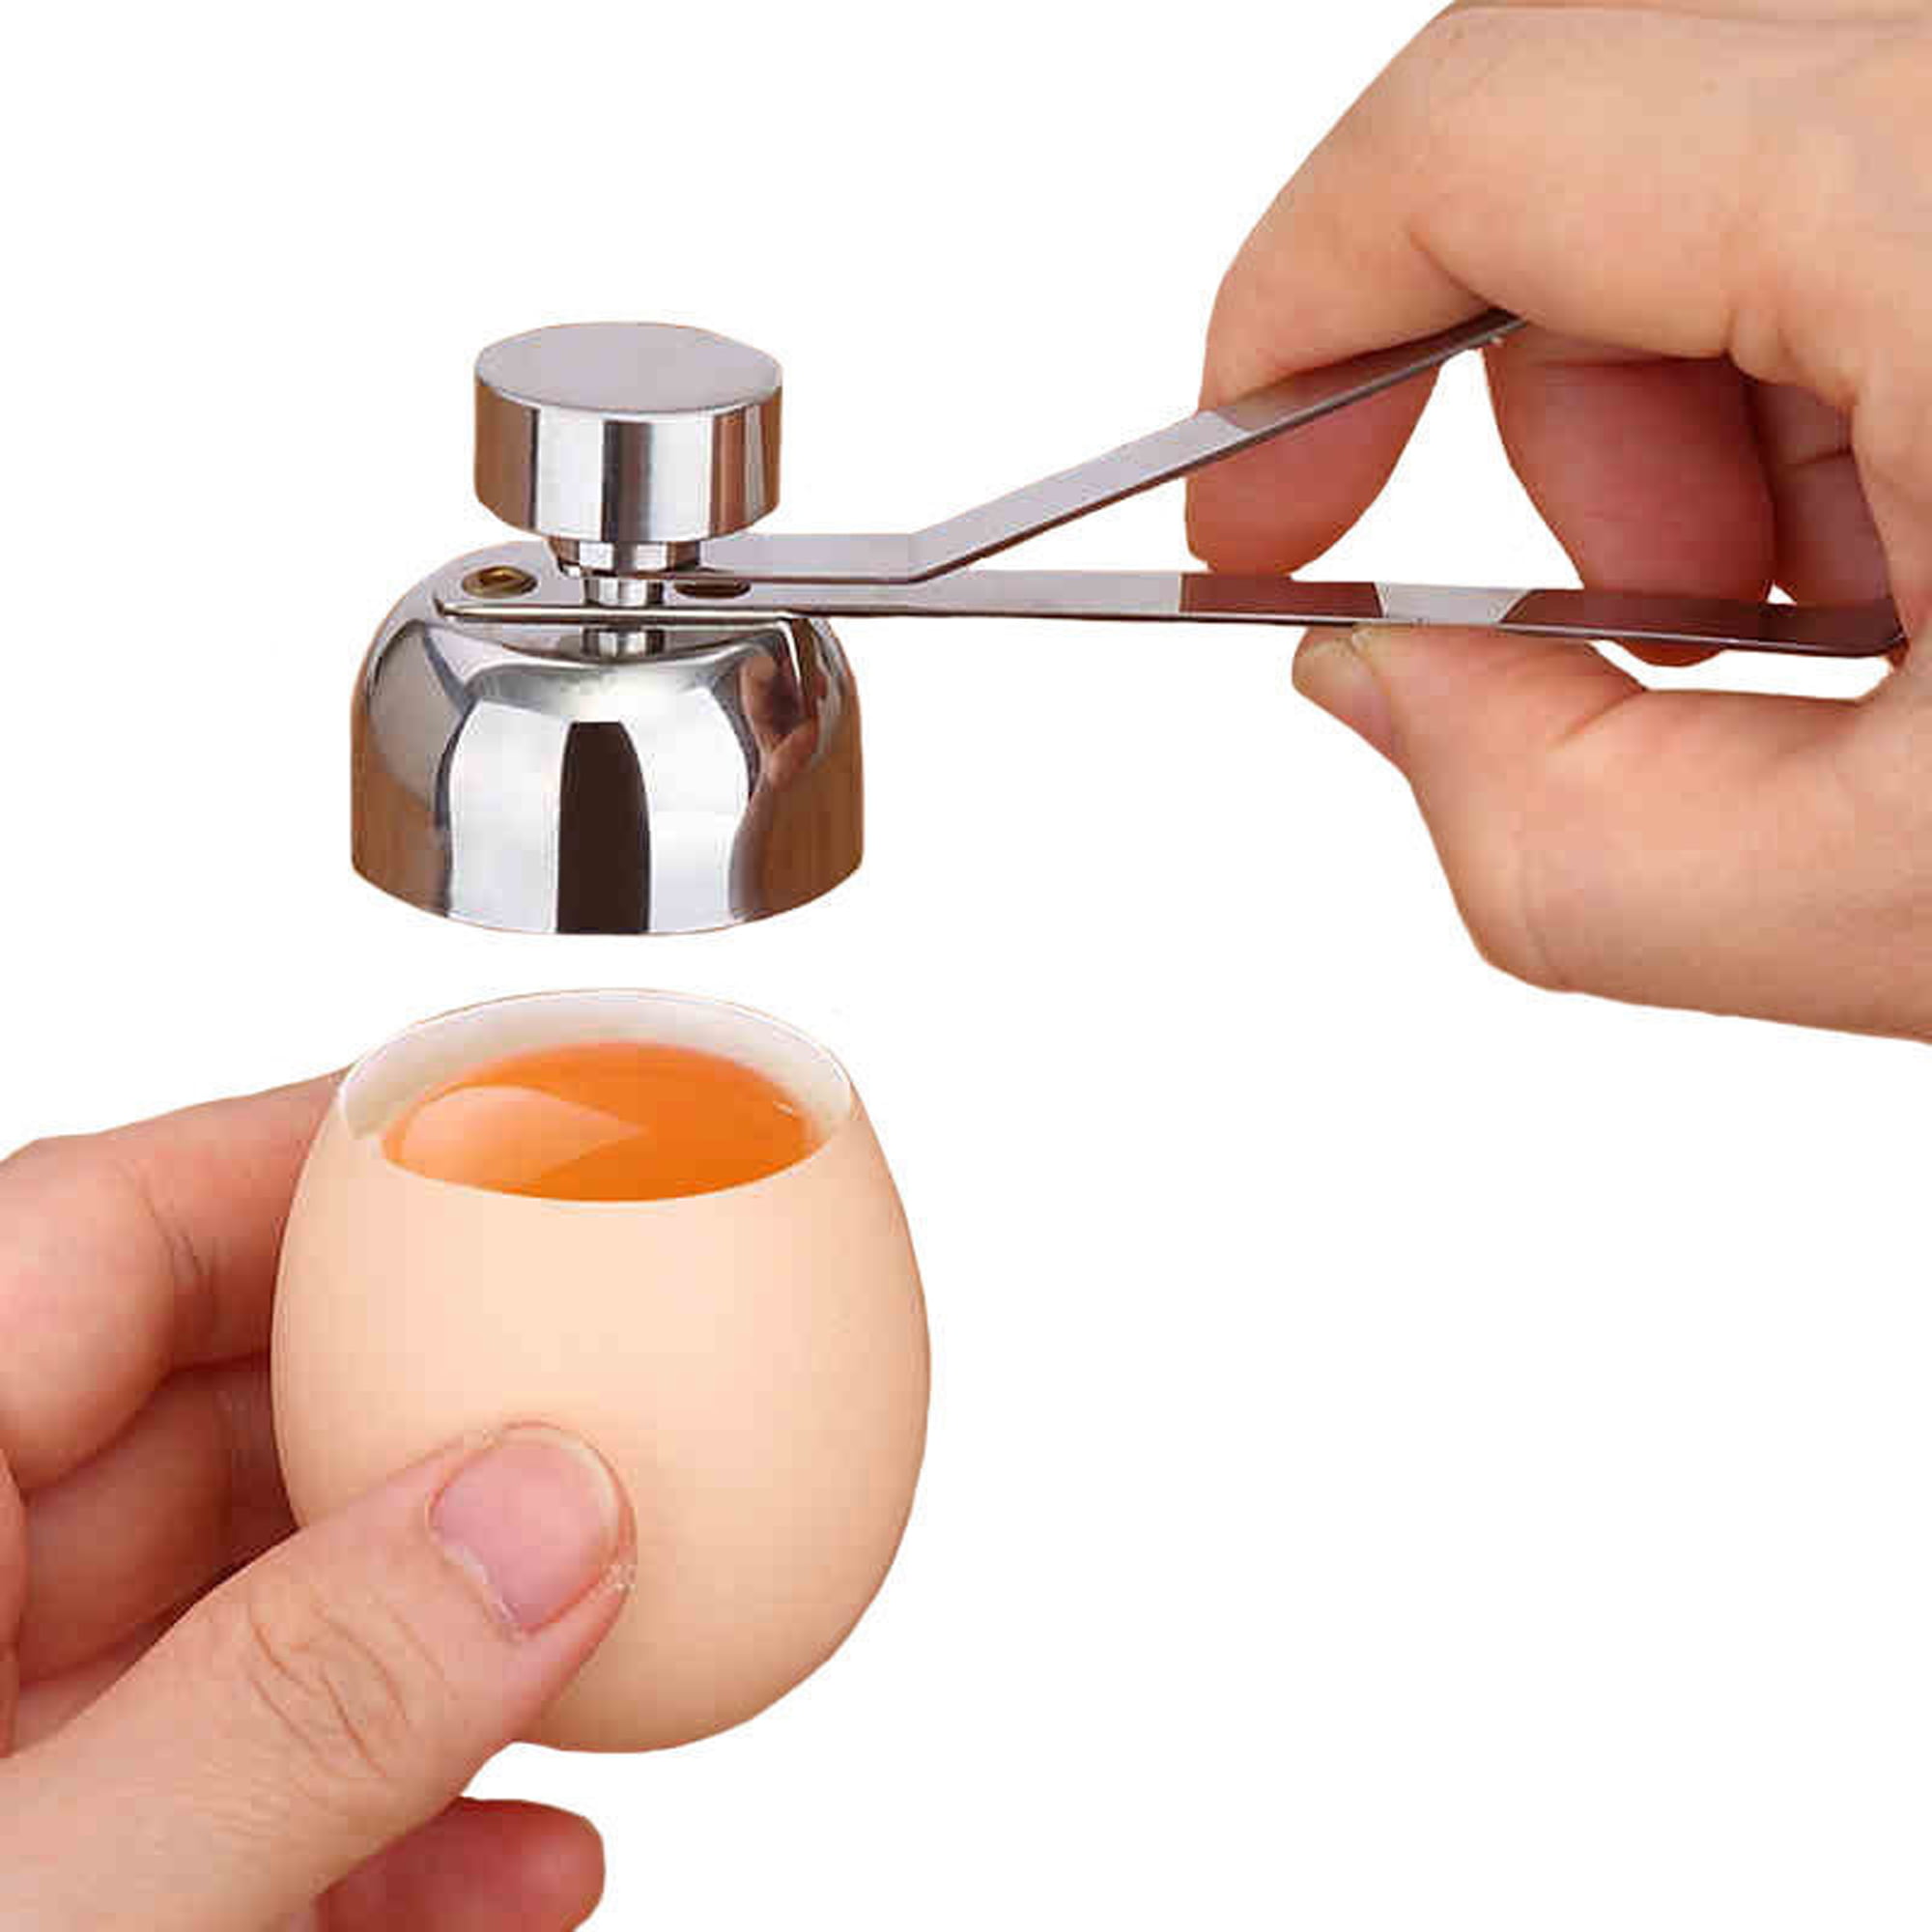 Egg Stractor Instantly Cracker Hard Boiled Eggshell Peeler Kitchen Tools SFASTER Easy Egg Shell Remover Creative Eggshell Sheller